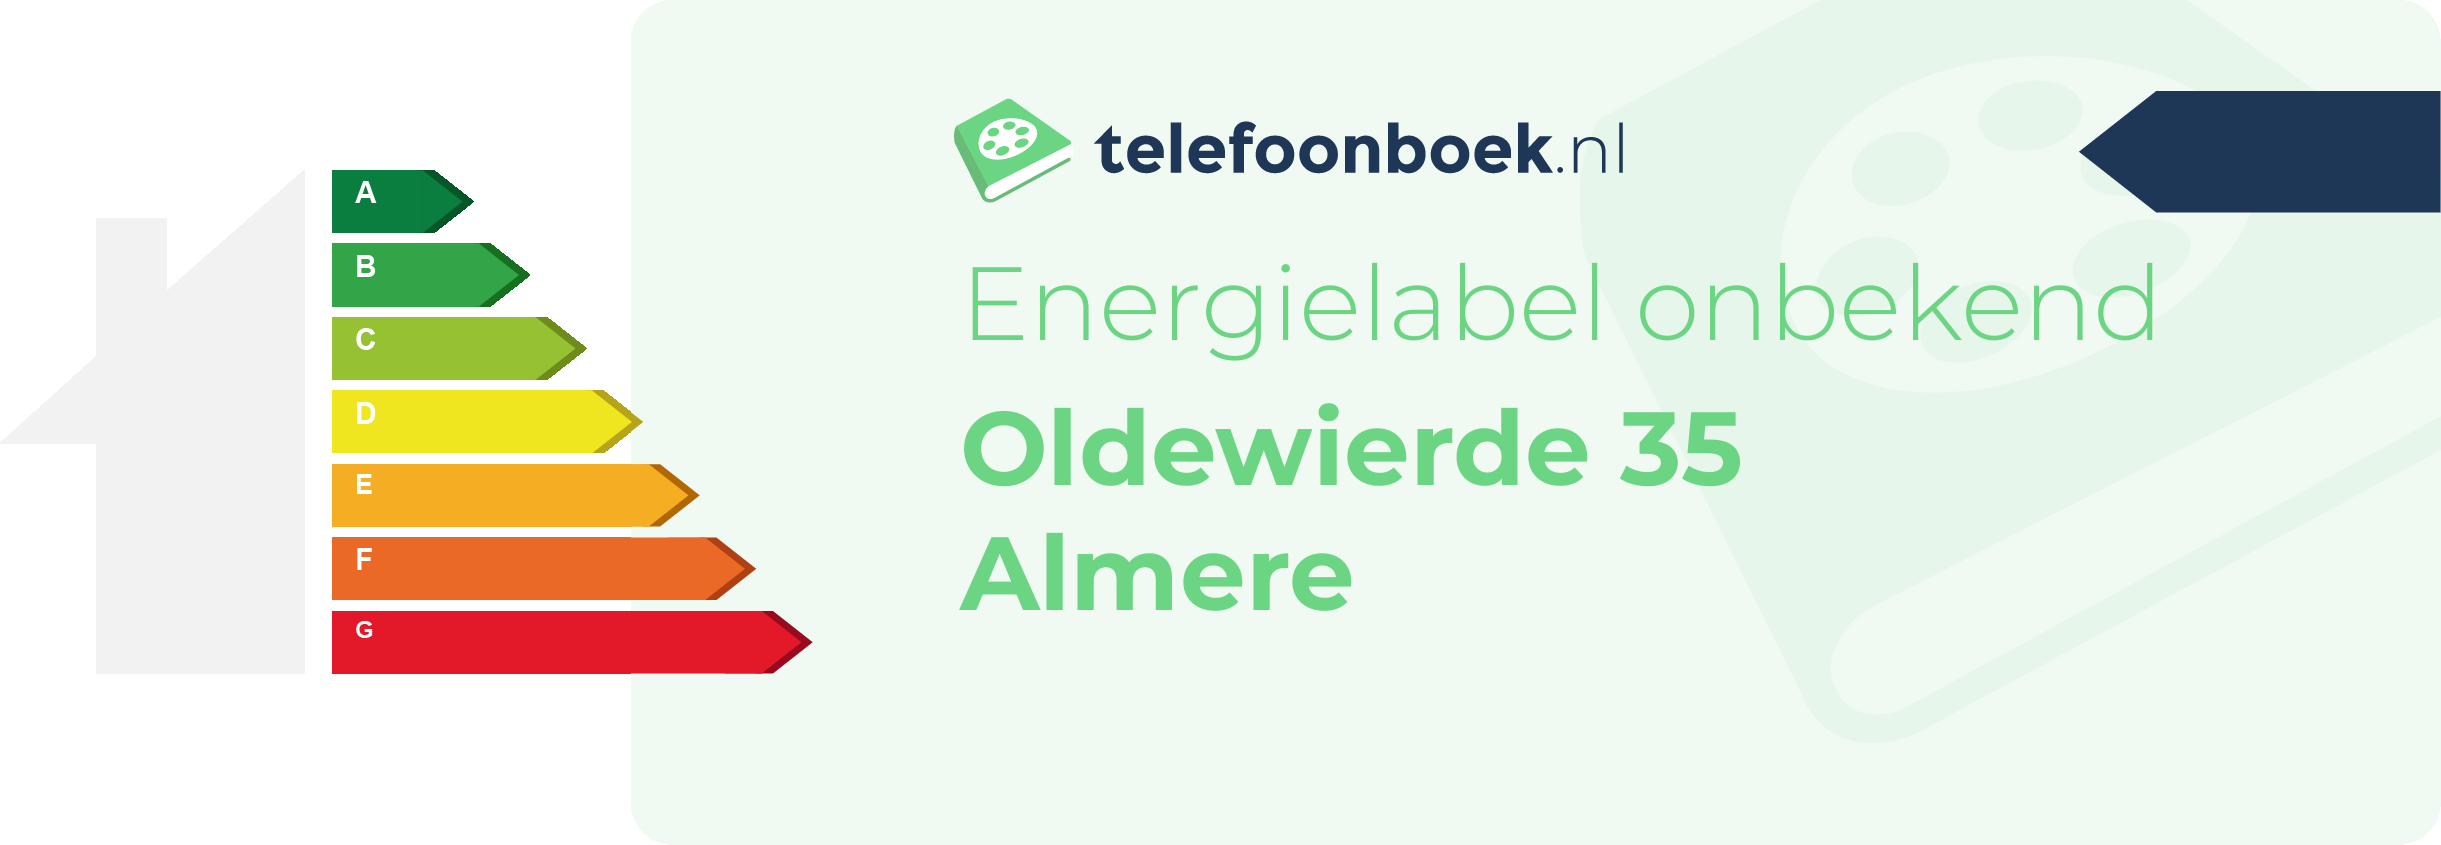 Energielabel Oldewierde 35 Almere